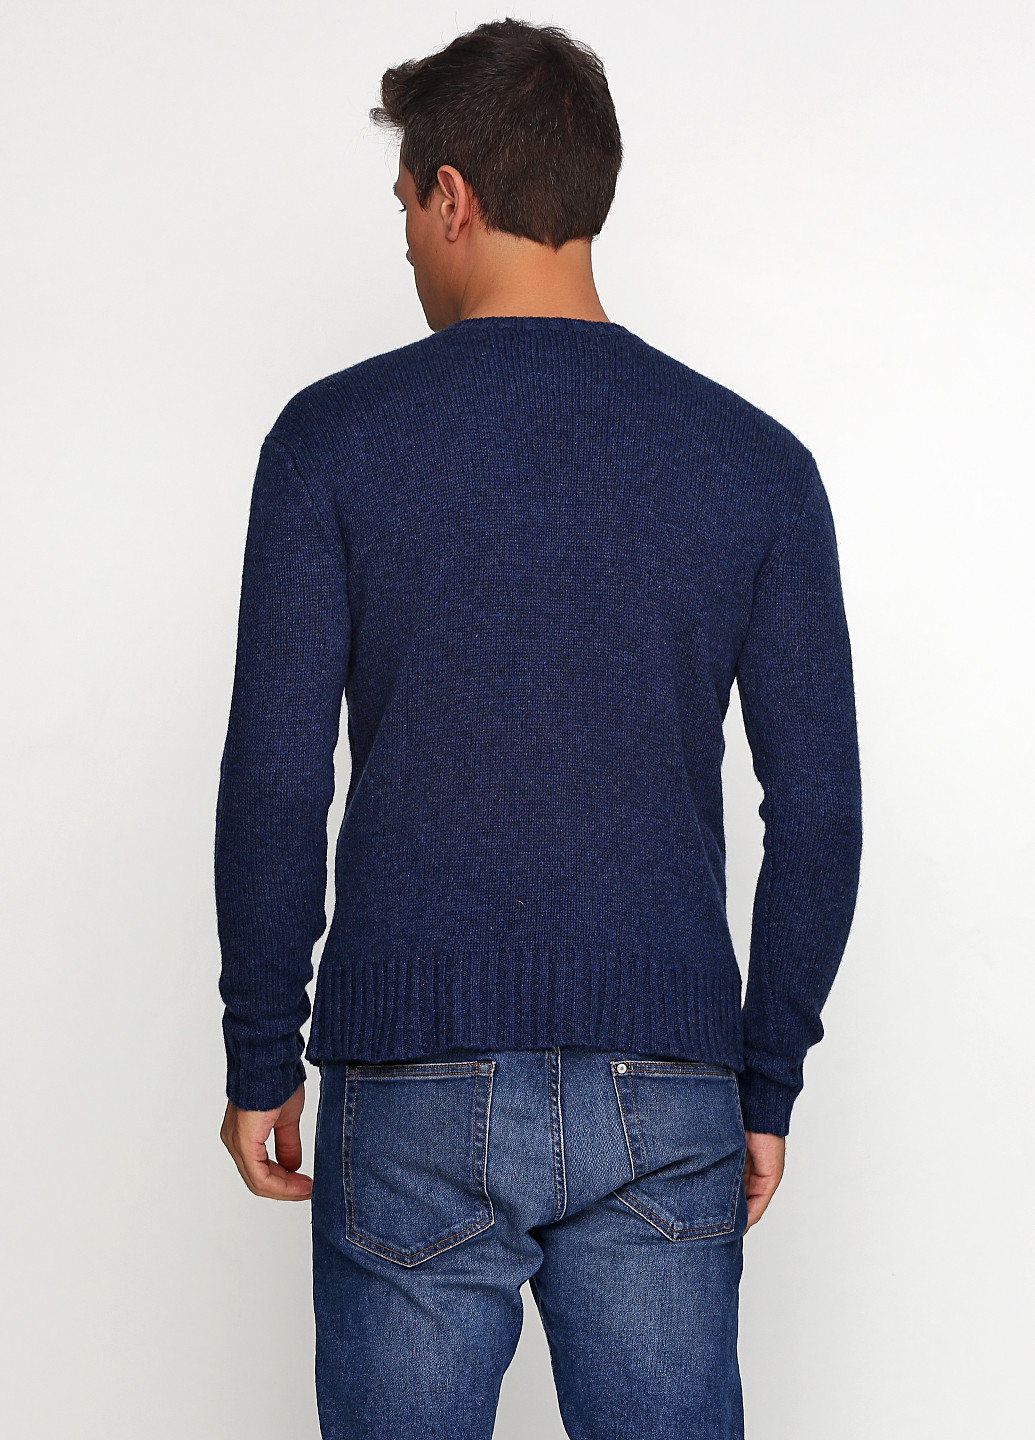 Темно-синий демисезонный свитер джемпер Ralph Lauren